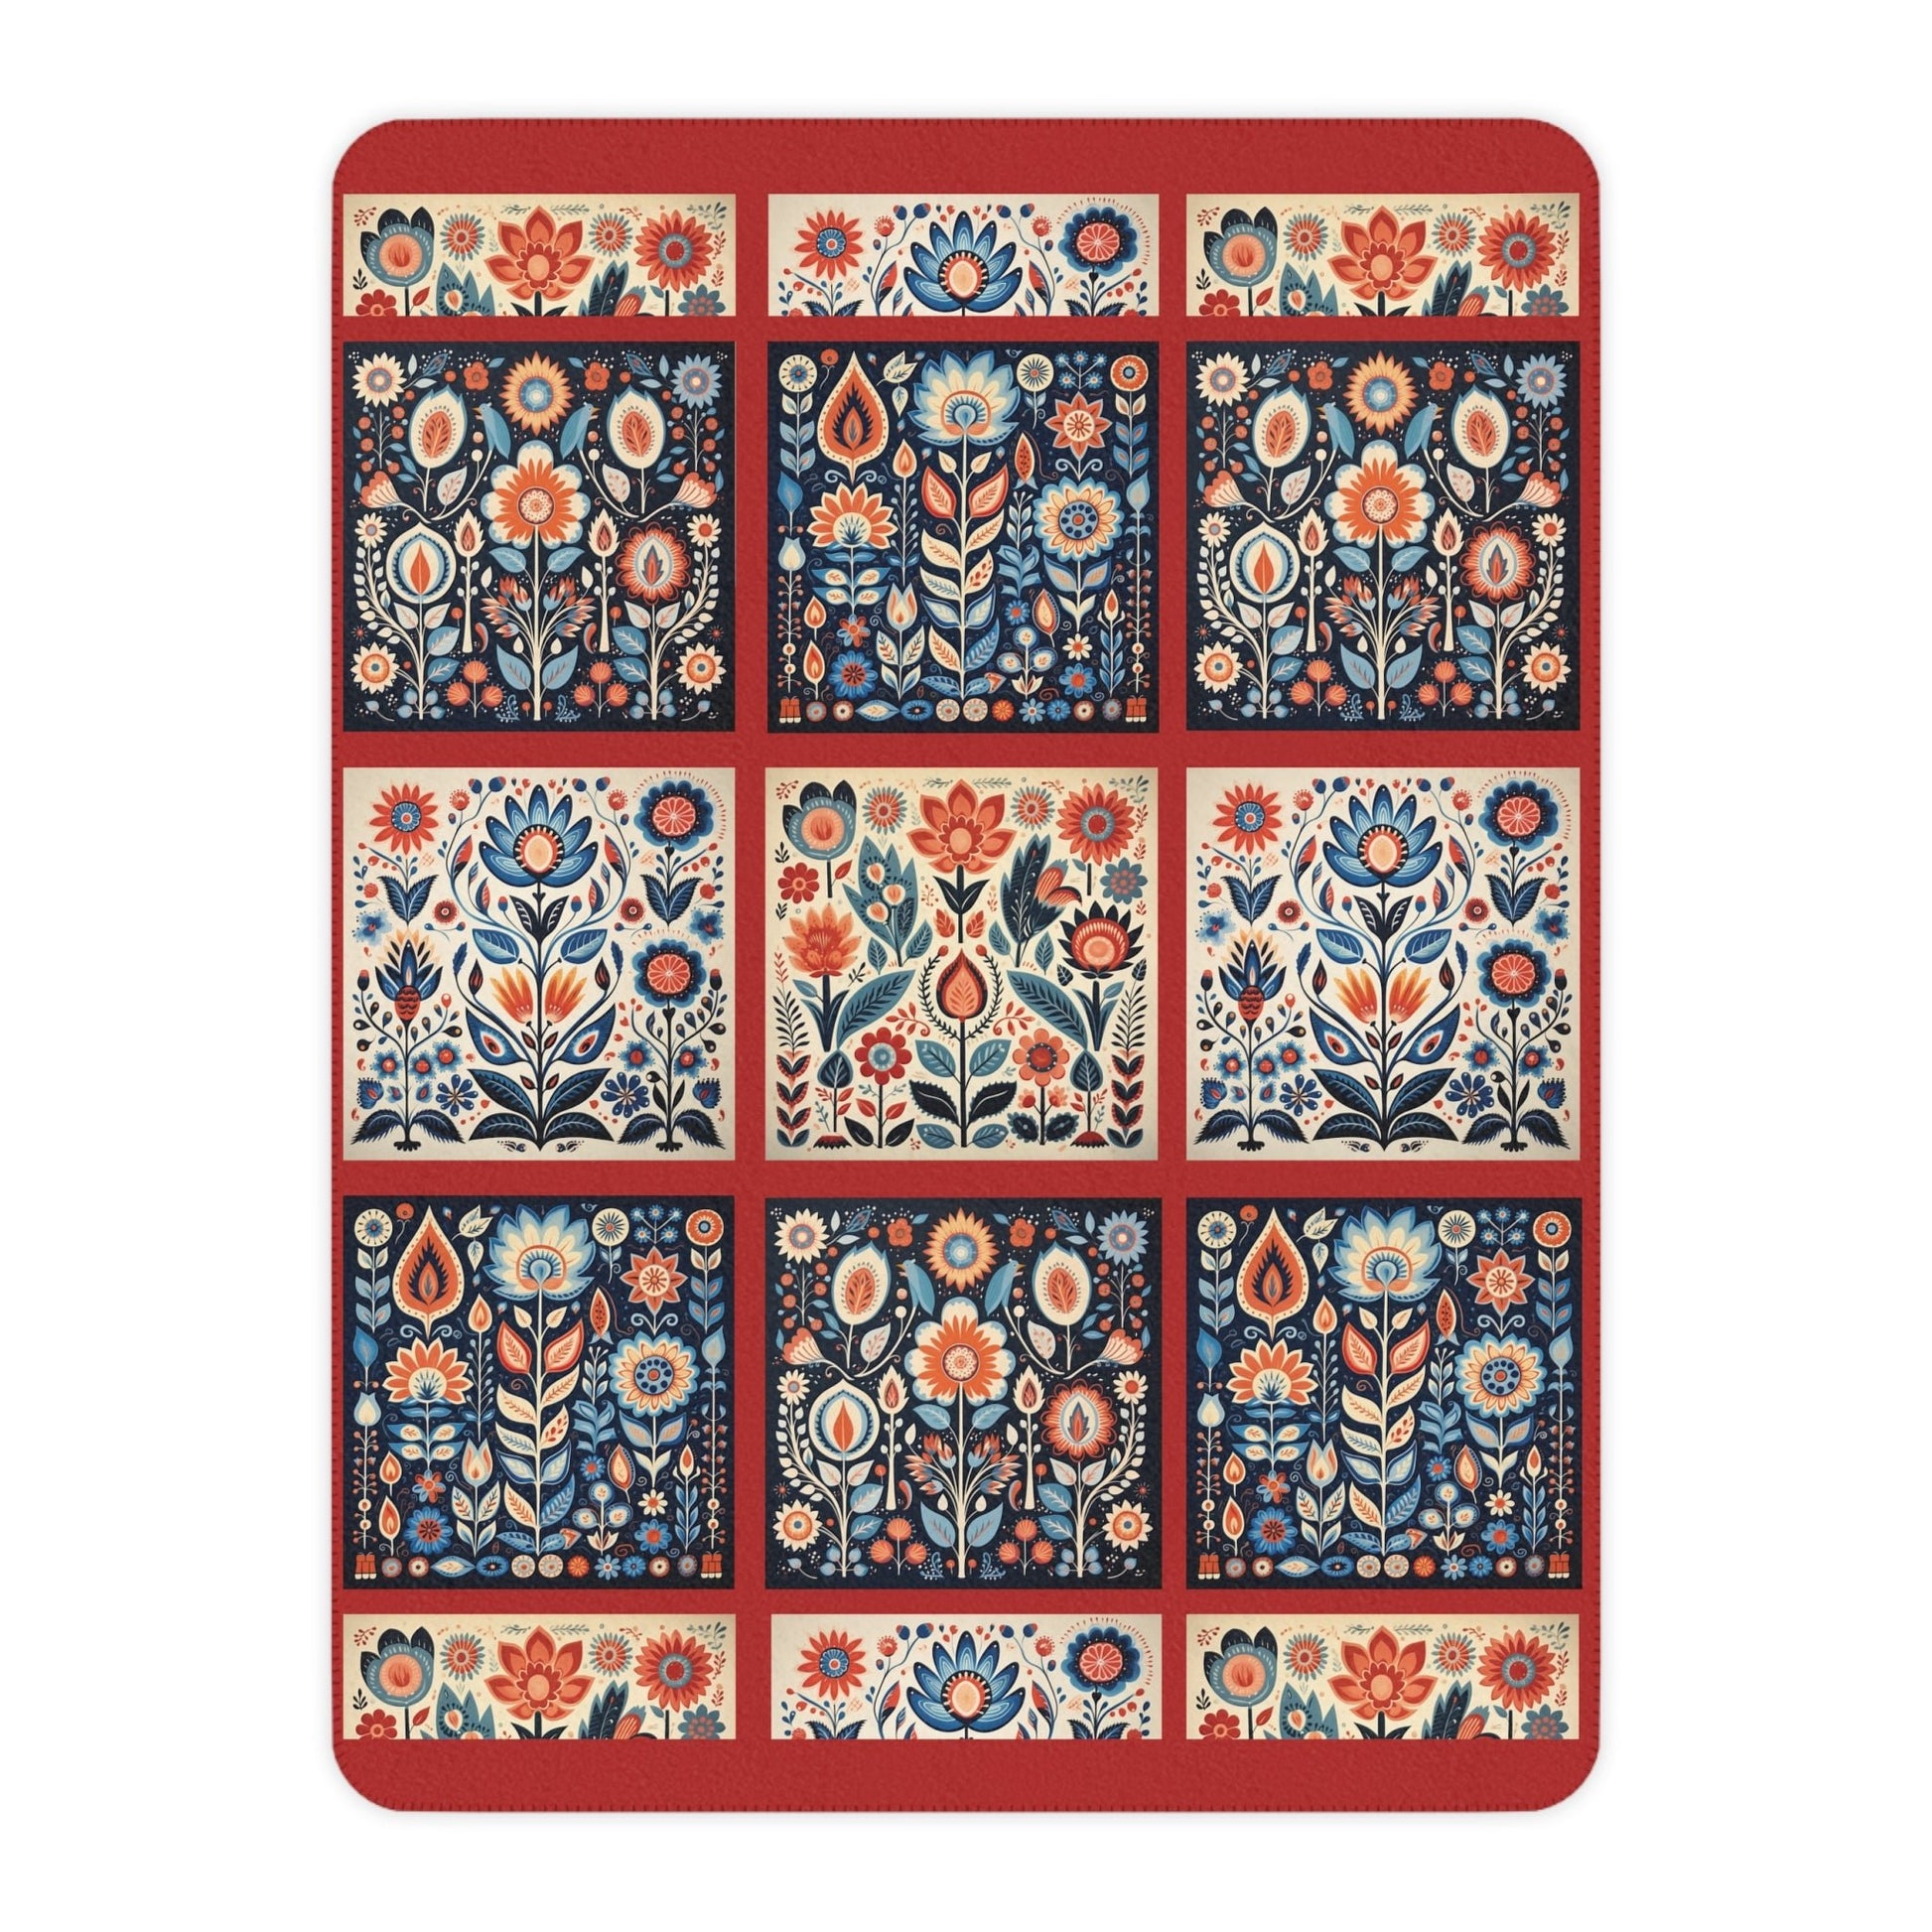 Scandi Folk Art Blanket, Scandinavian Art Style - Folk Art - Romantic Gift - FlooredByArt